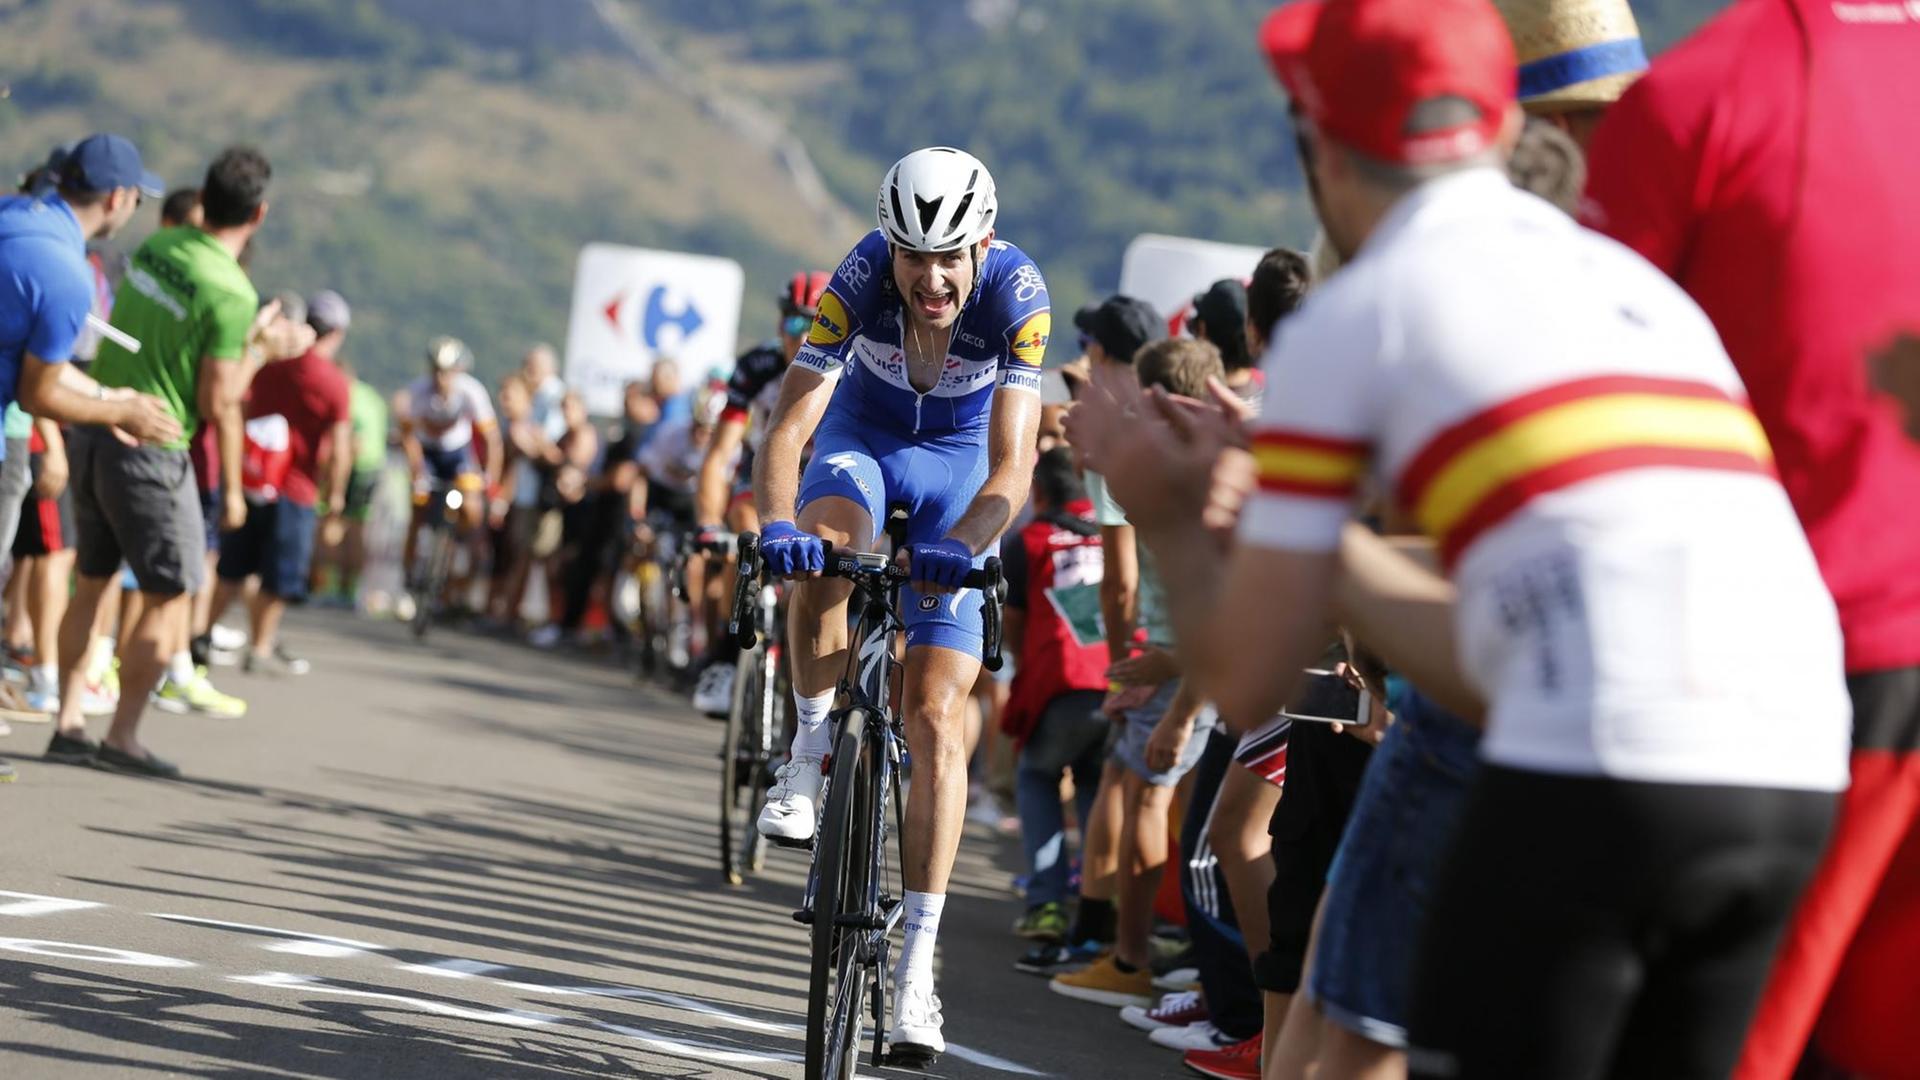 Das bergige Gelände sorgt für anspruchsvolle Etappen bei der Vuelta.